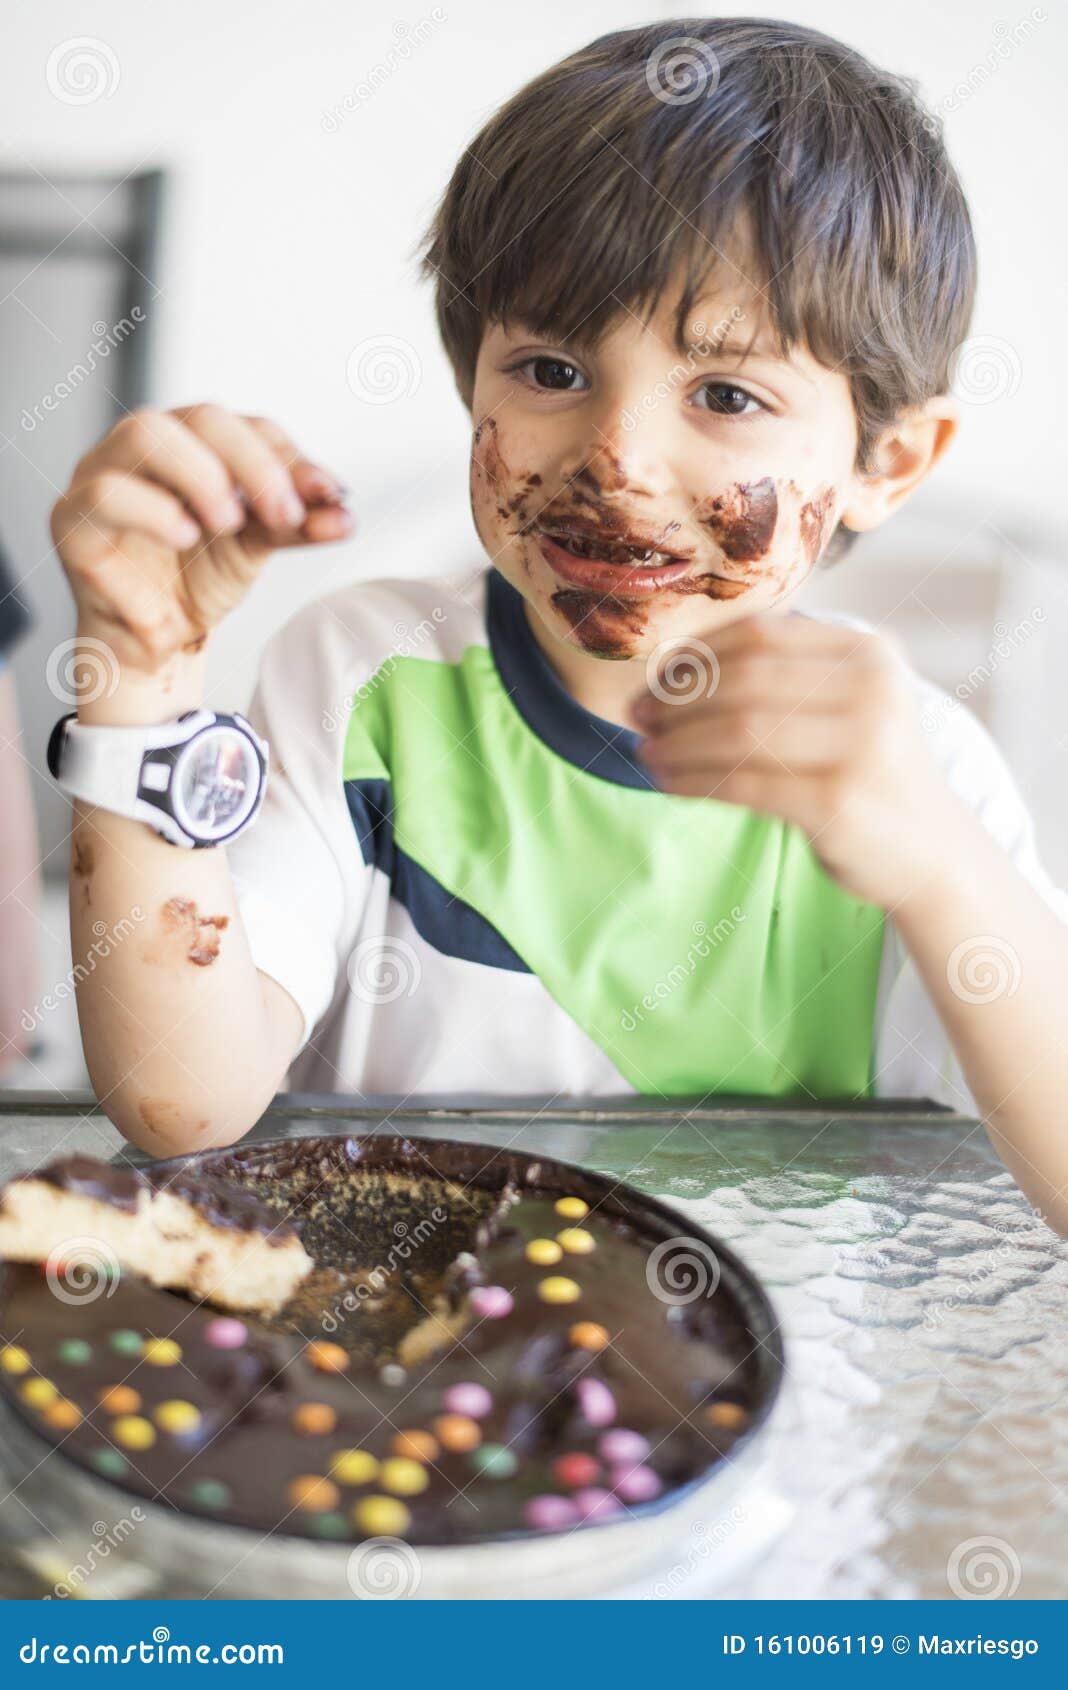 Los Niños Comiendo Chocolate En Casa Imagen de archivo - Imagen de gente,  comer: 161006119